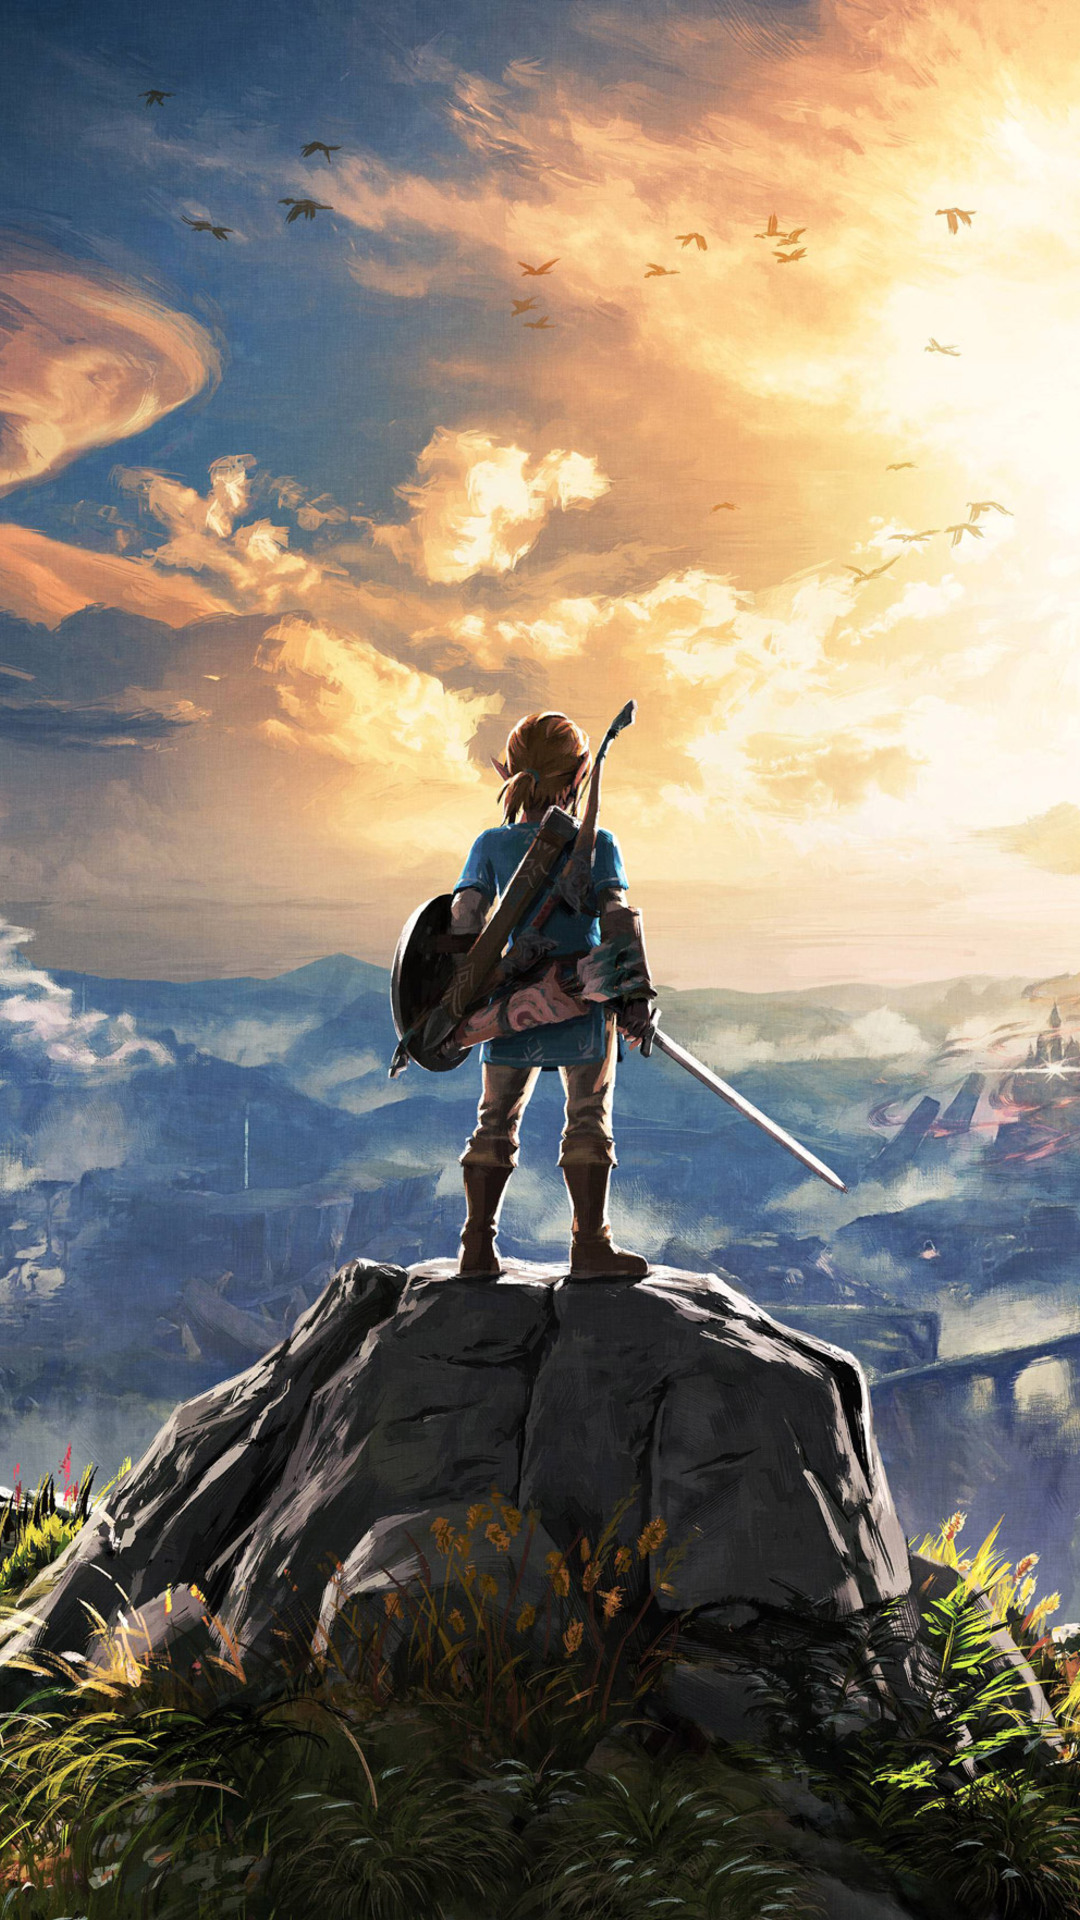 Legend Of Zelda Breath Of The Wild Iphone Wallpapers